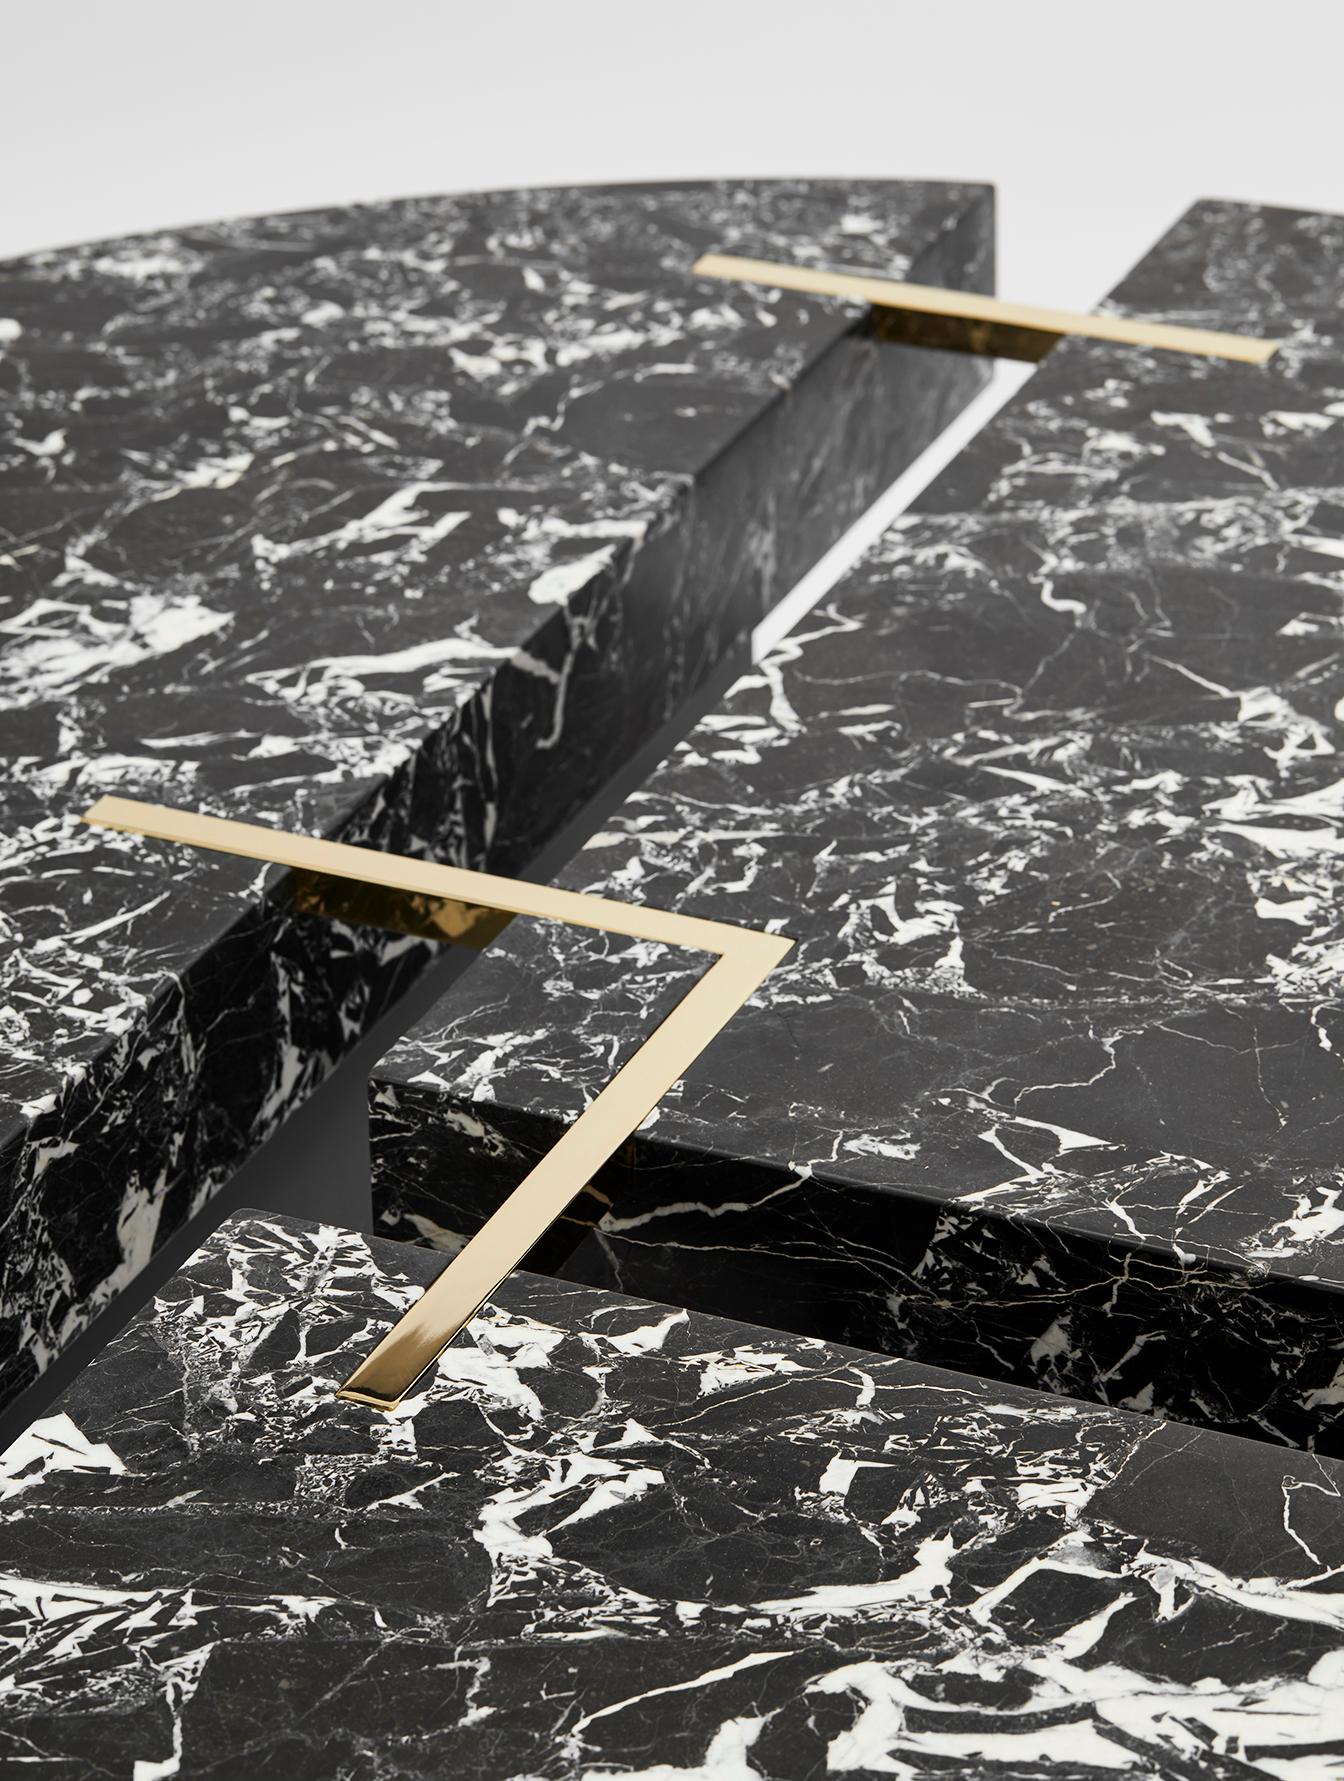 La table basse ronde Couture, composée de marbre Nero Antica et de détails en laiton poli, est conçue par Hervé Langlais pour la Galerie Negropontes à Paris, France. 

Hervé Langlais est diplômé de l'école d'architecture de Normandie à Rouen. Il a